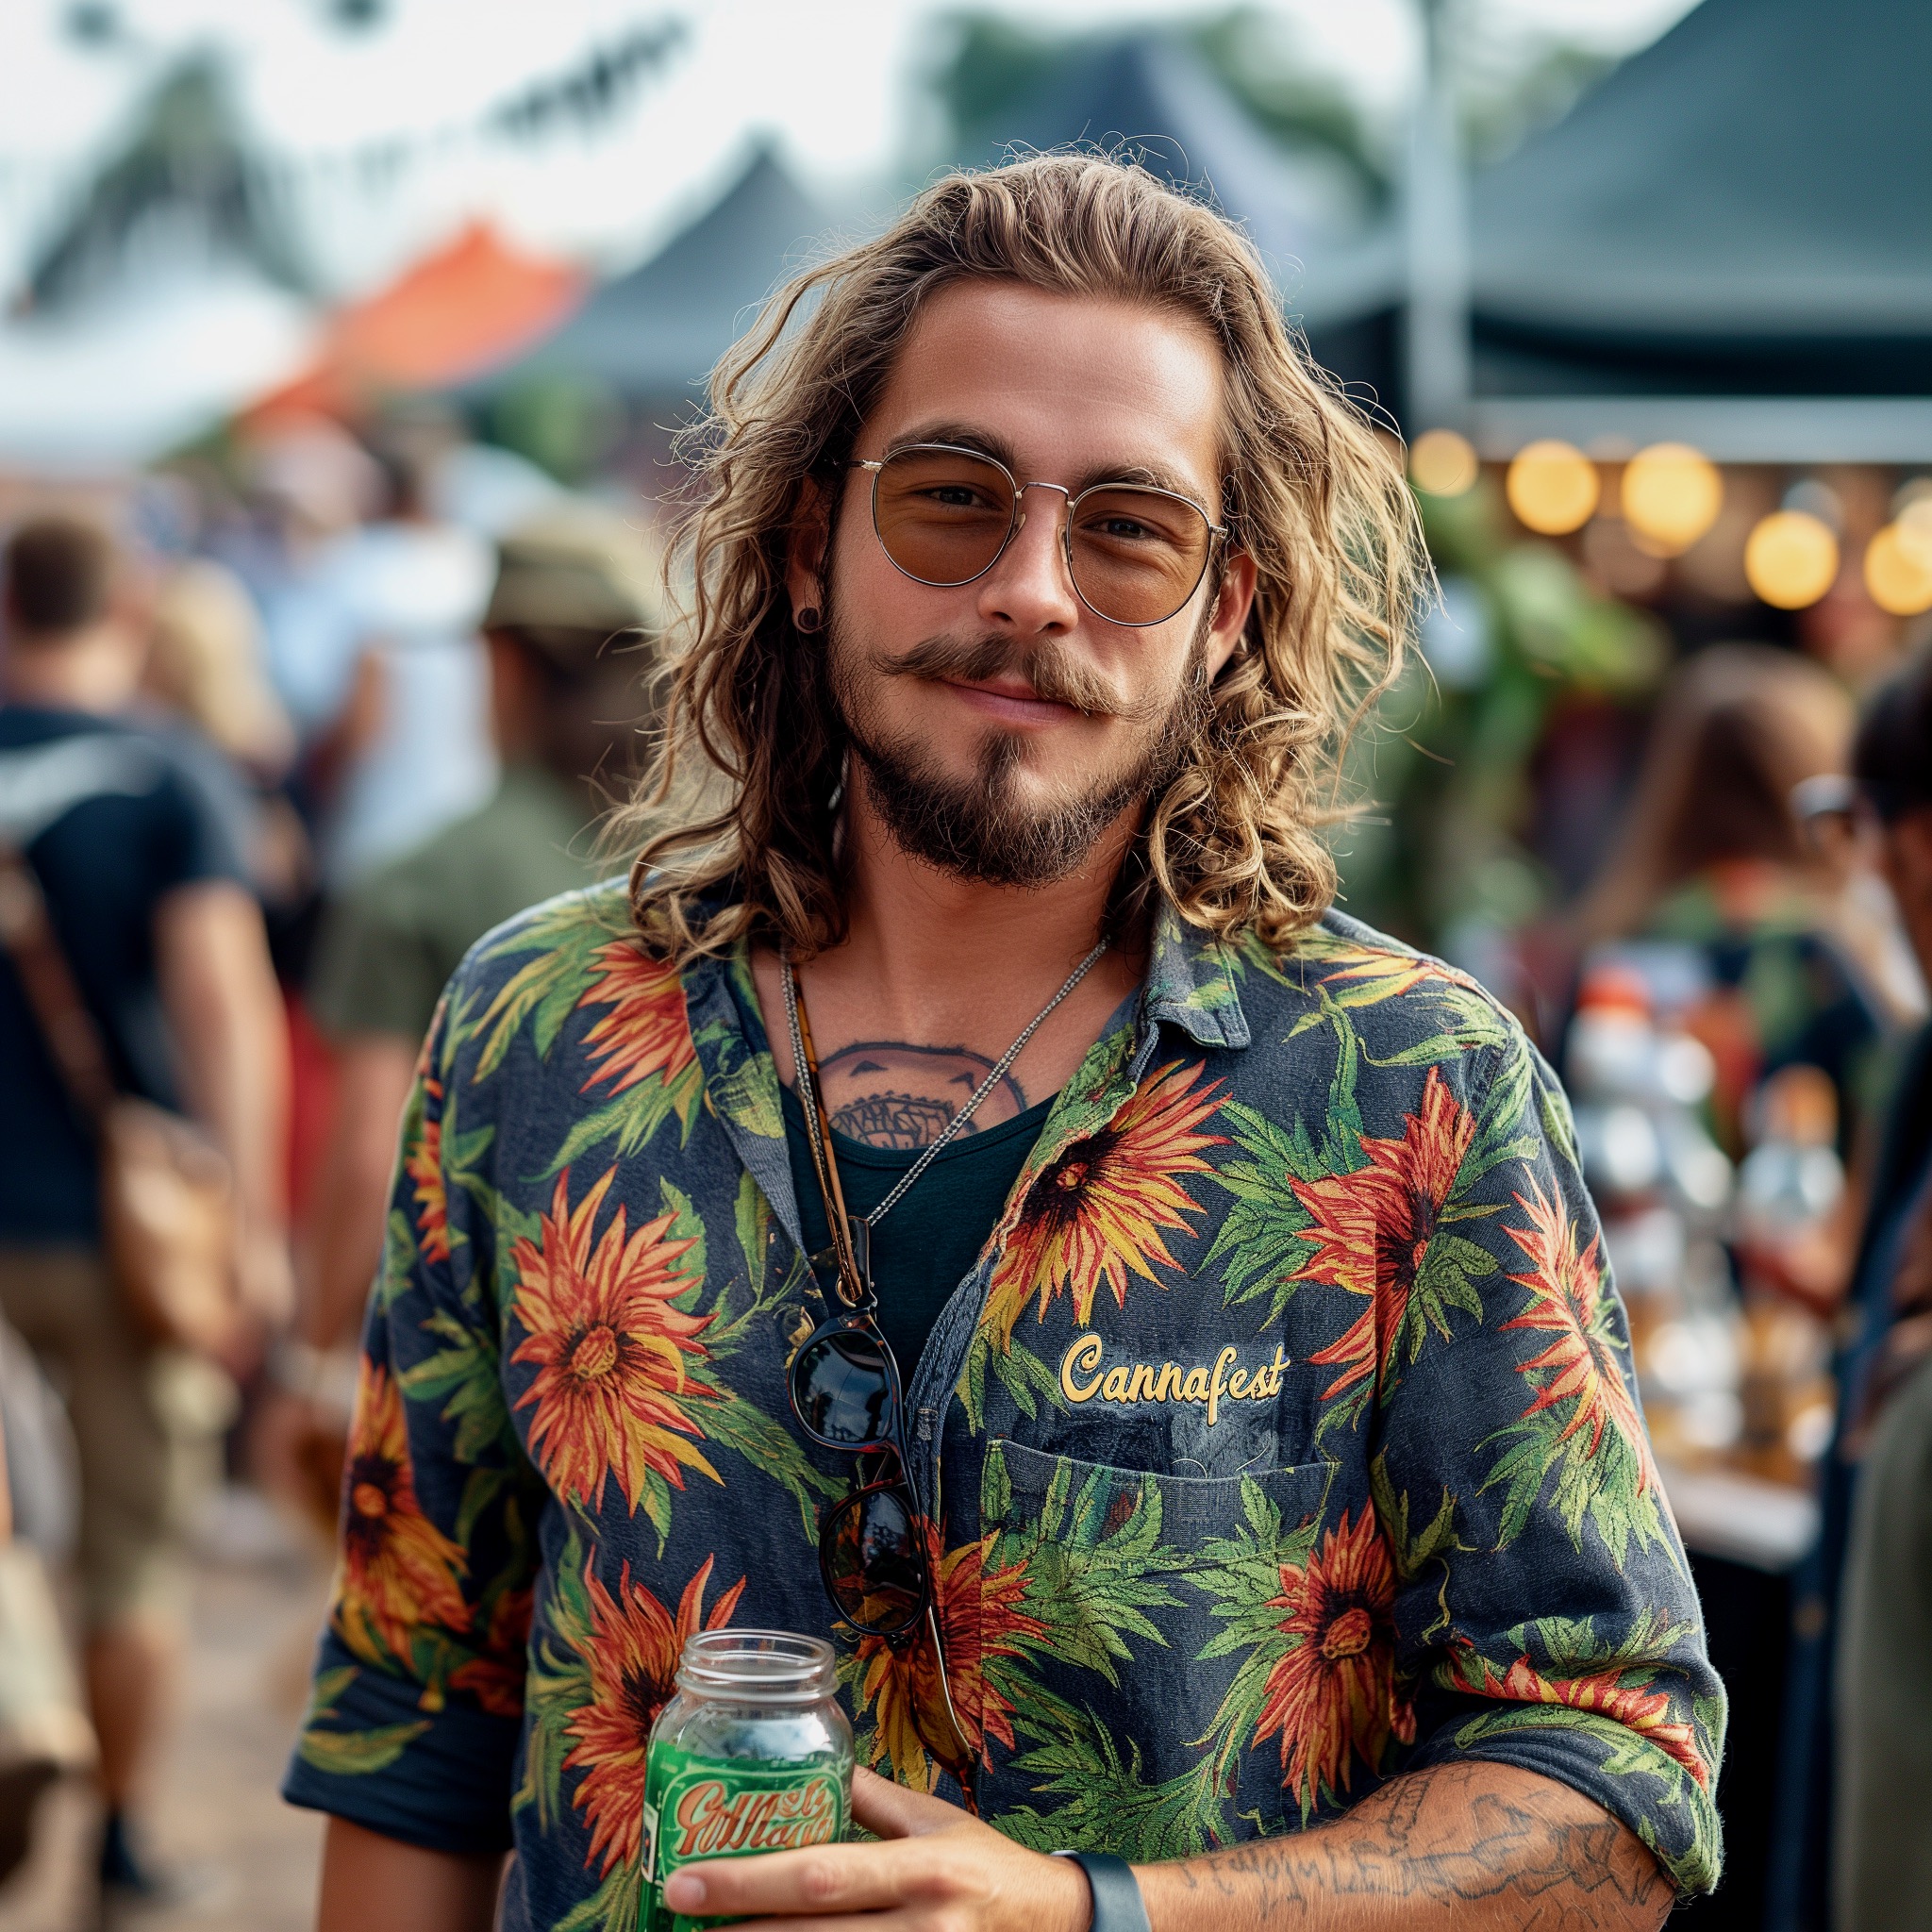 prinzrupi Jonas liebt es an Cannabis Festivals teilzunehmen